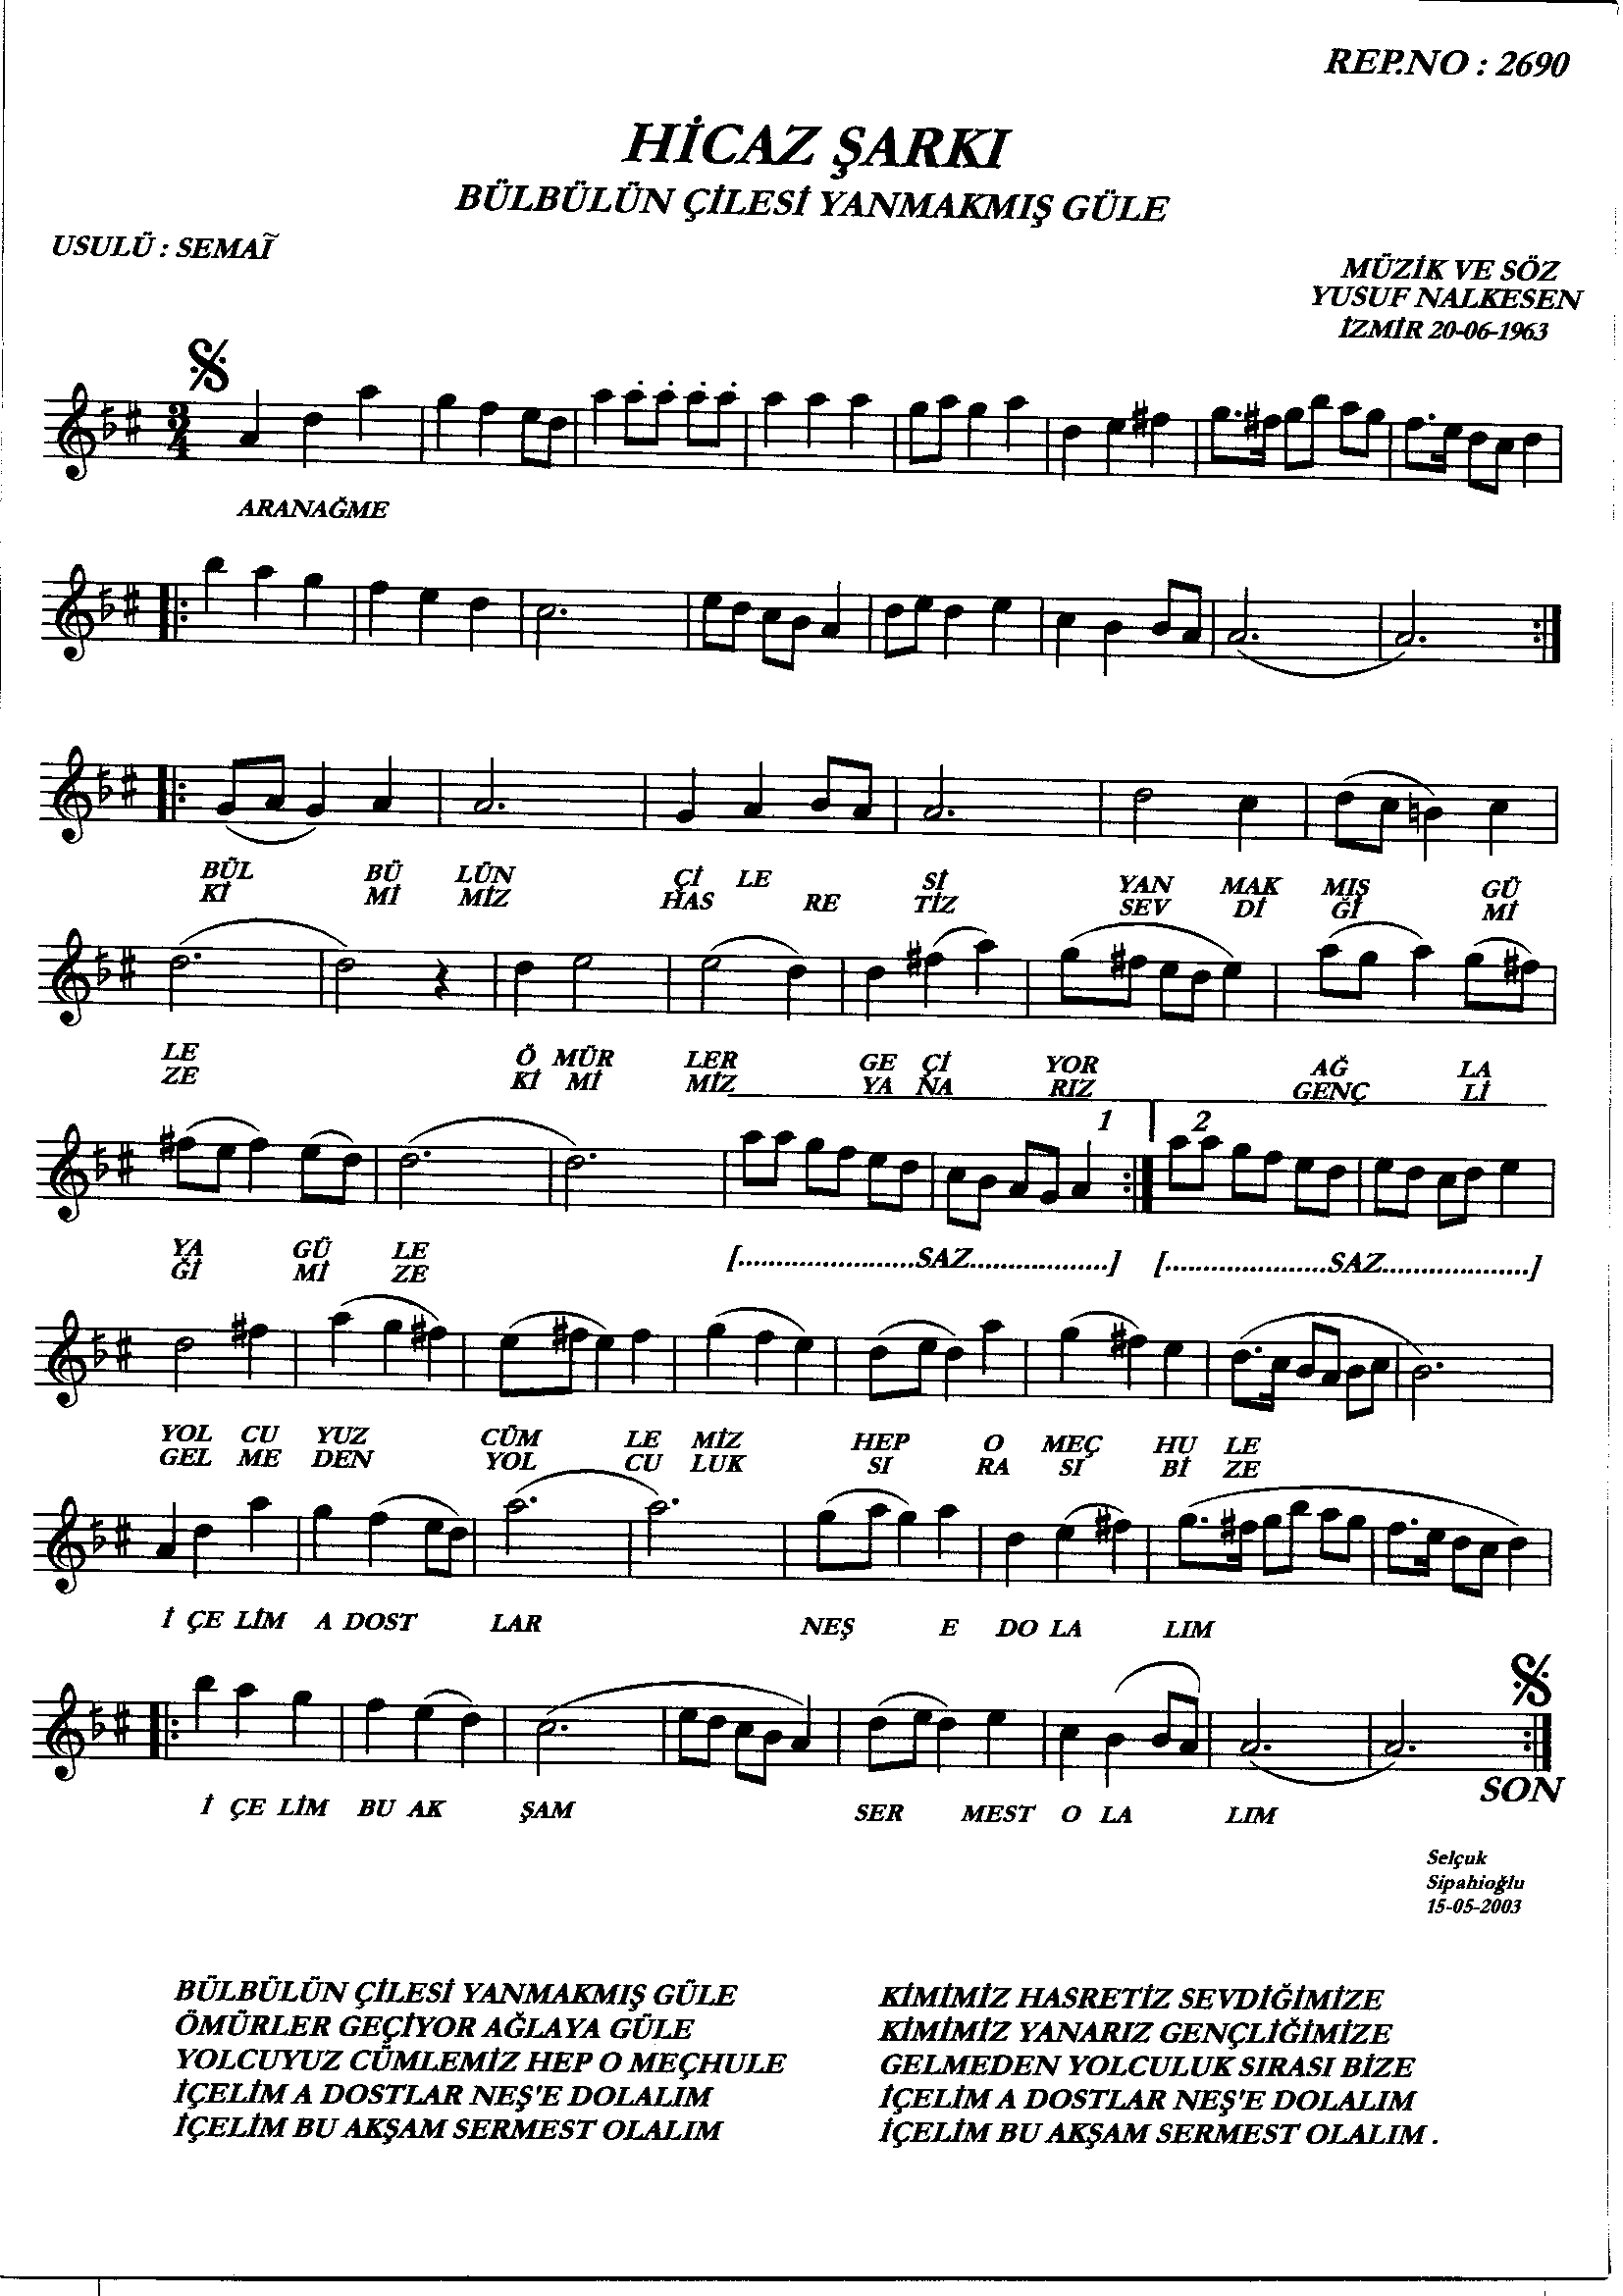 Hicâz - Şarkı - Yusuf Nalkesen - Sayfa 1